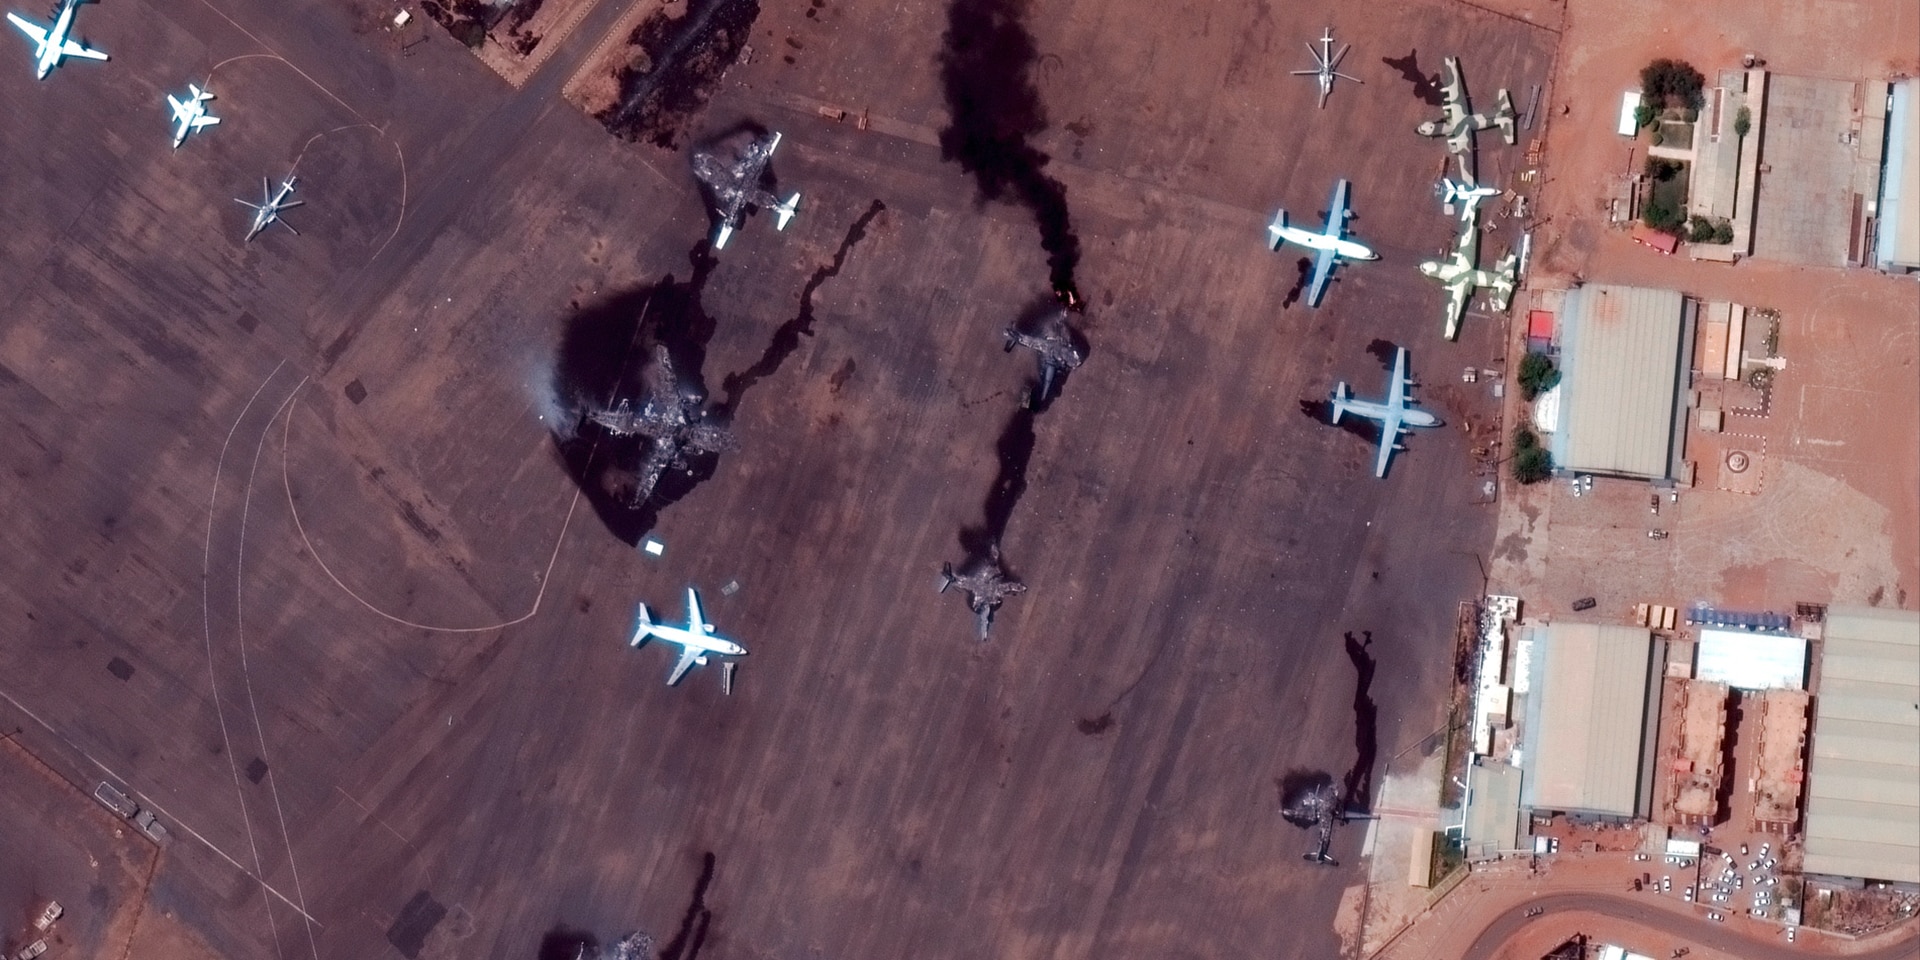 Bild von oben auf das Flugfeld des Flughafens von Khartum, auf dem mehrere Flugzeuge zu sehen sind. Vier Flugzeuge sind ausgebrannt.